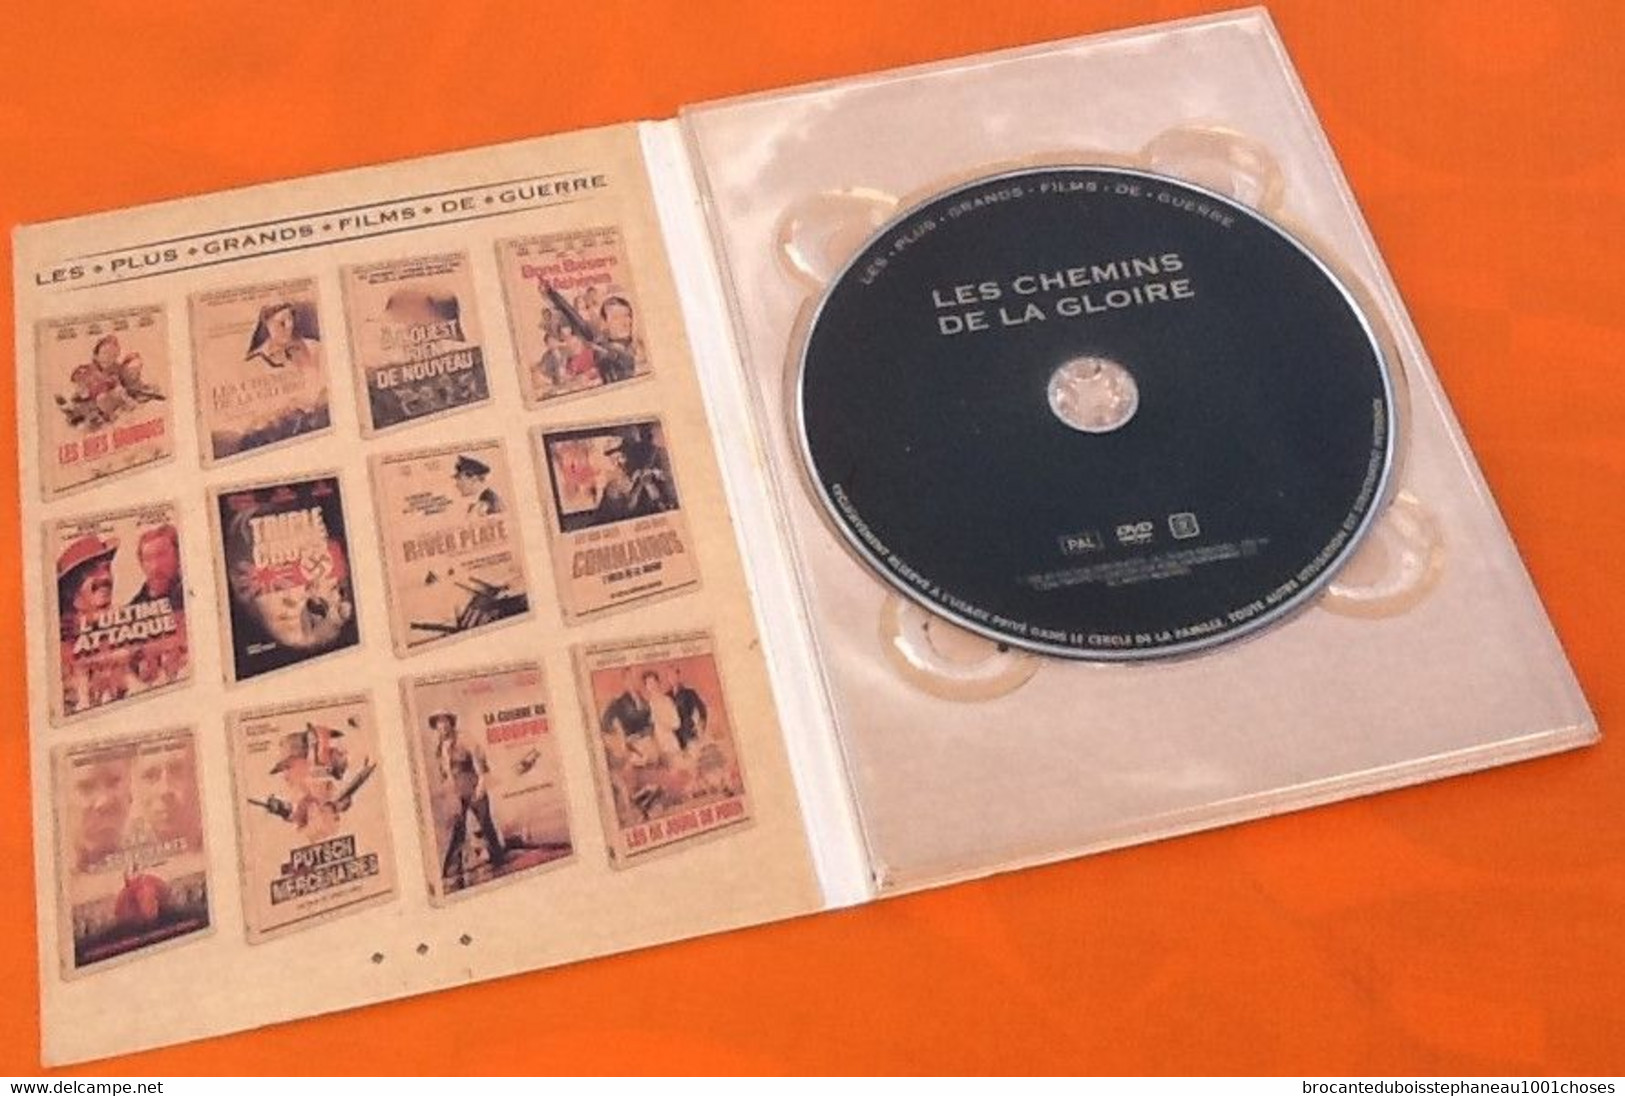 DVD  Les Chemins De La Gloire (2008)  De Howard Hawks  Avec Fredric March, Warner Baxter... - Histoire